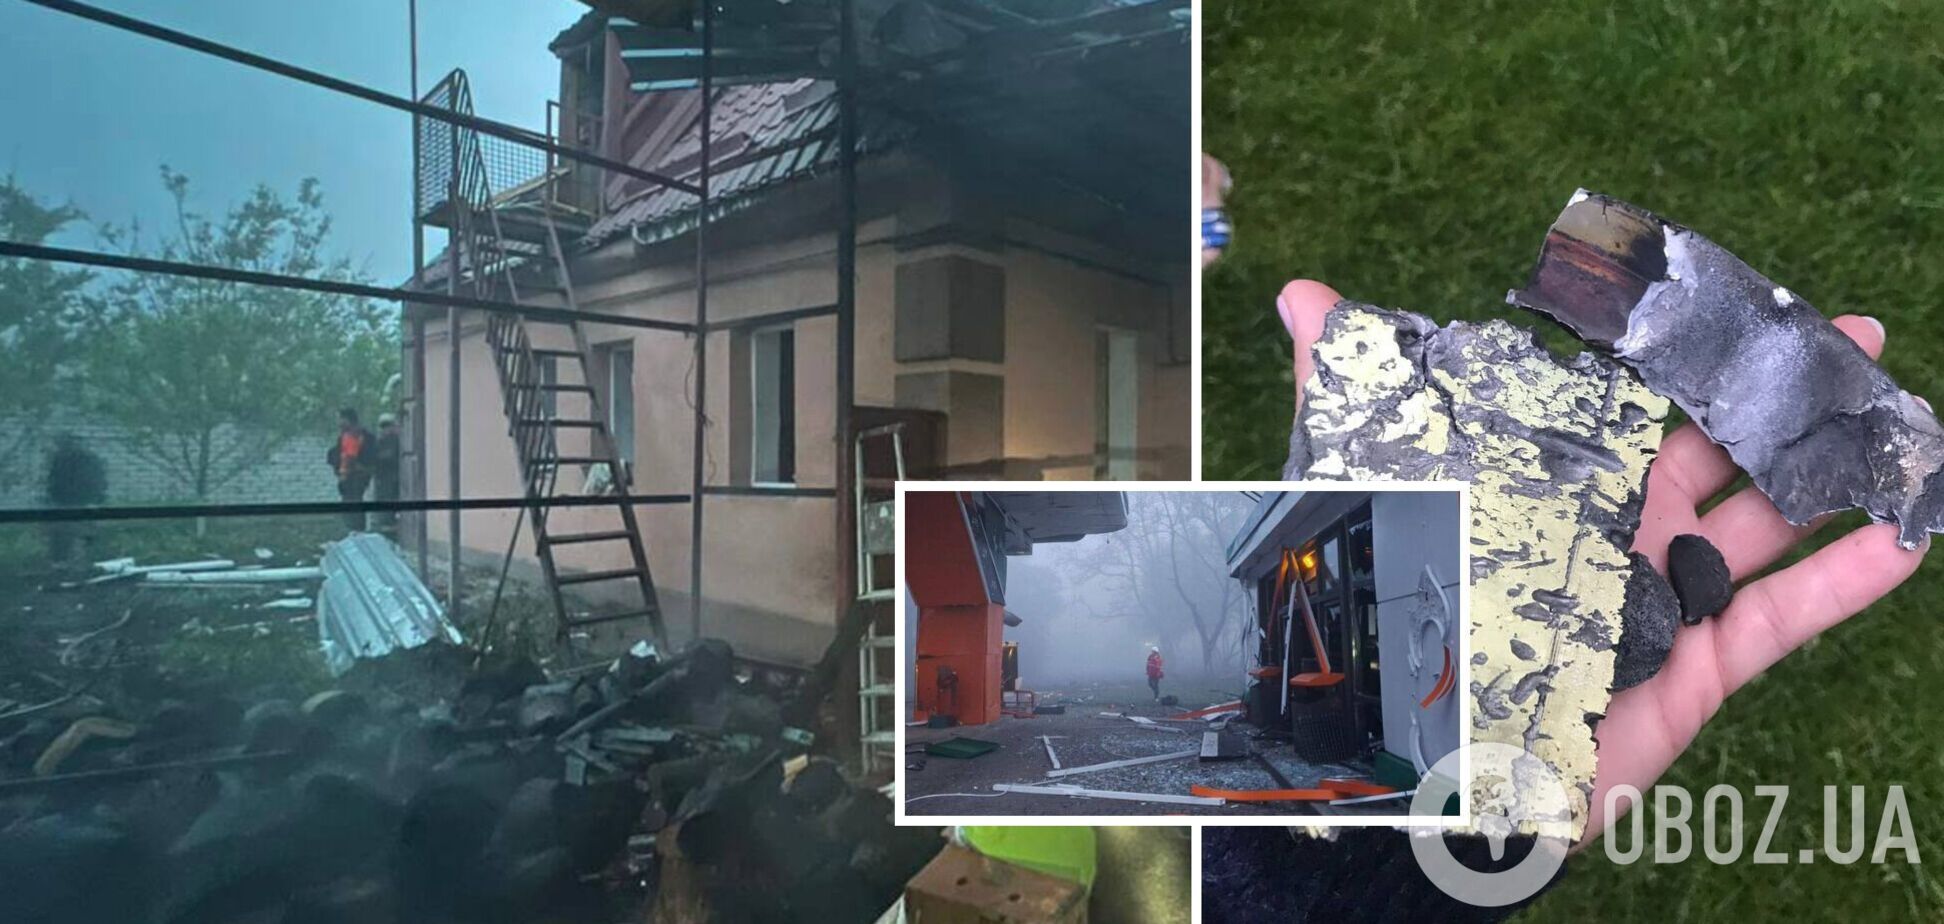 'Сверхтрудная ночь': оккупанты мощно атаковали Днепр, повреждены дома, заправка и предприятия. Фото